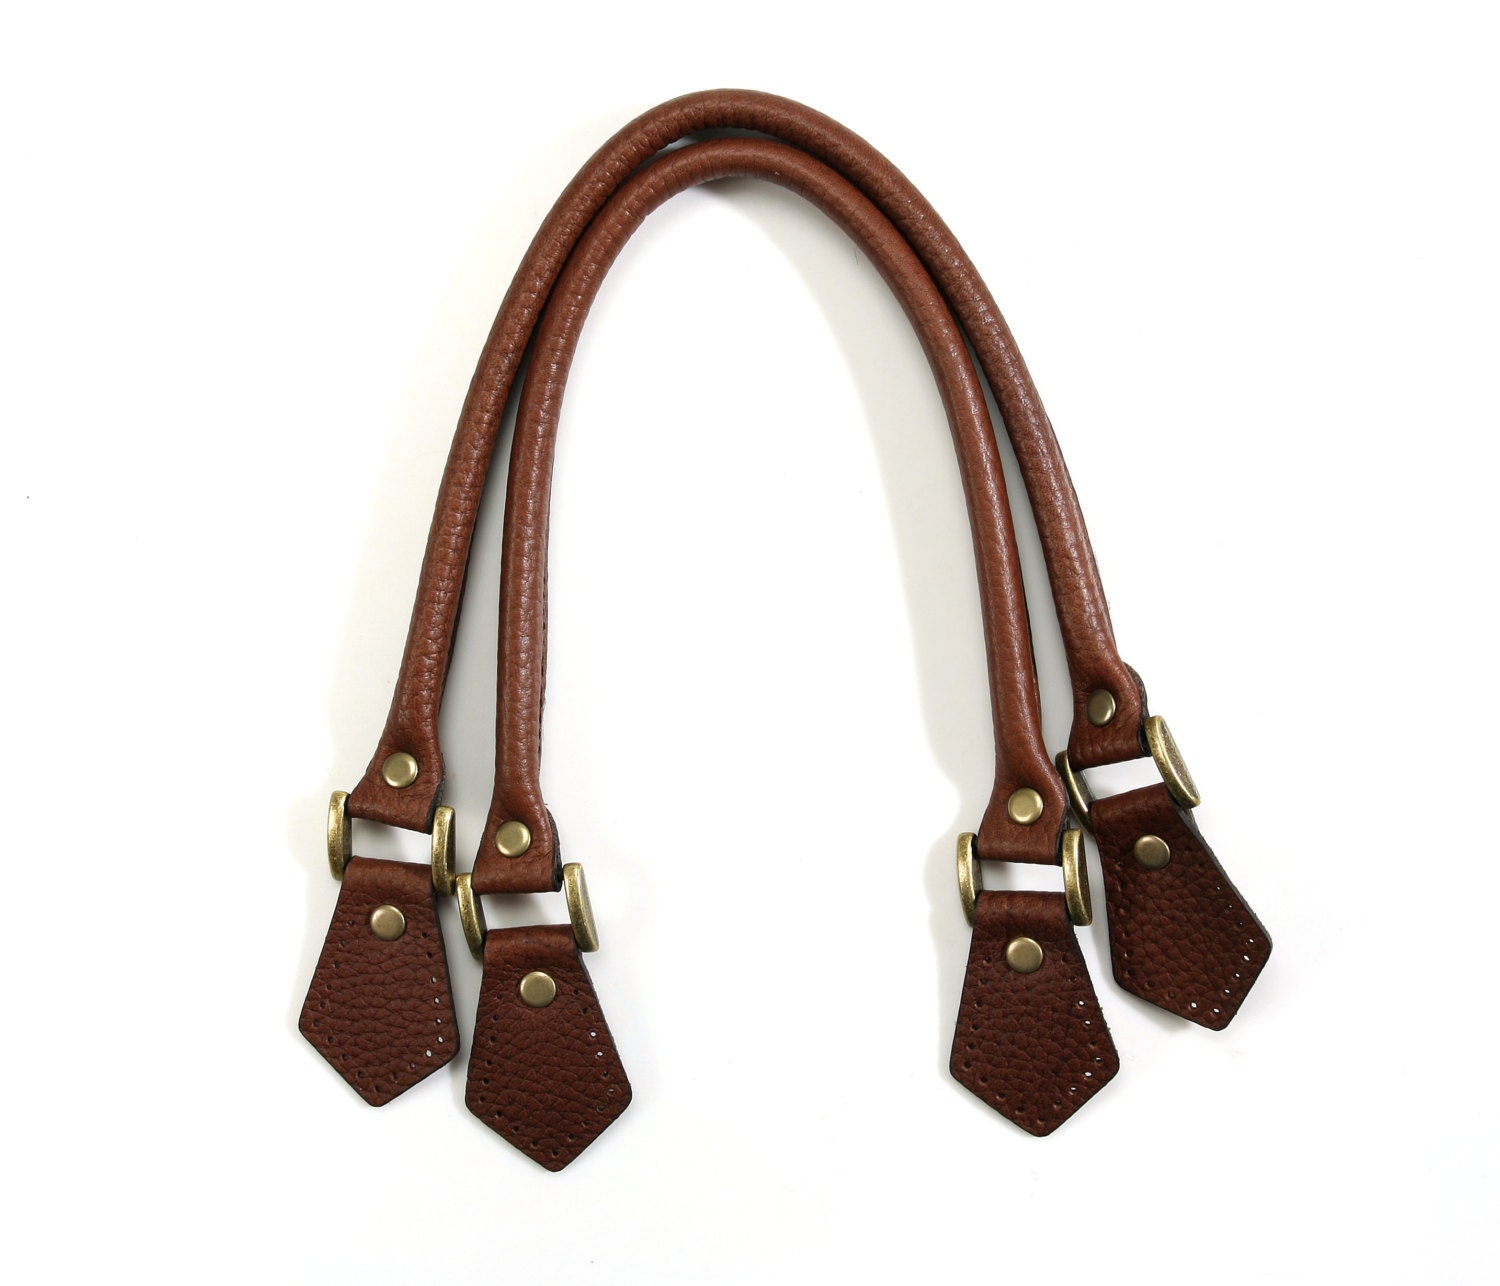 24.8 inch byhands Genuine Leather Adjustable Buckle Shoulder Bag Strap Gold Style Ring, Ivory (32-6402)